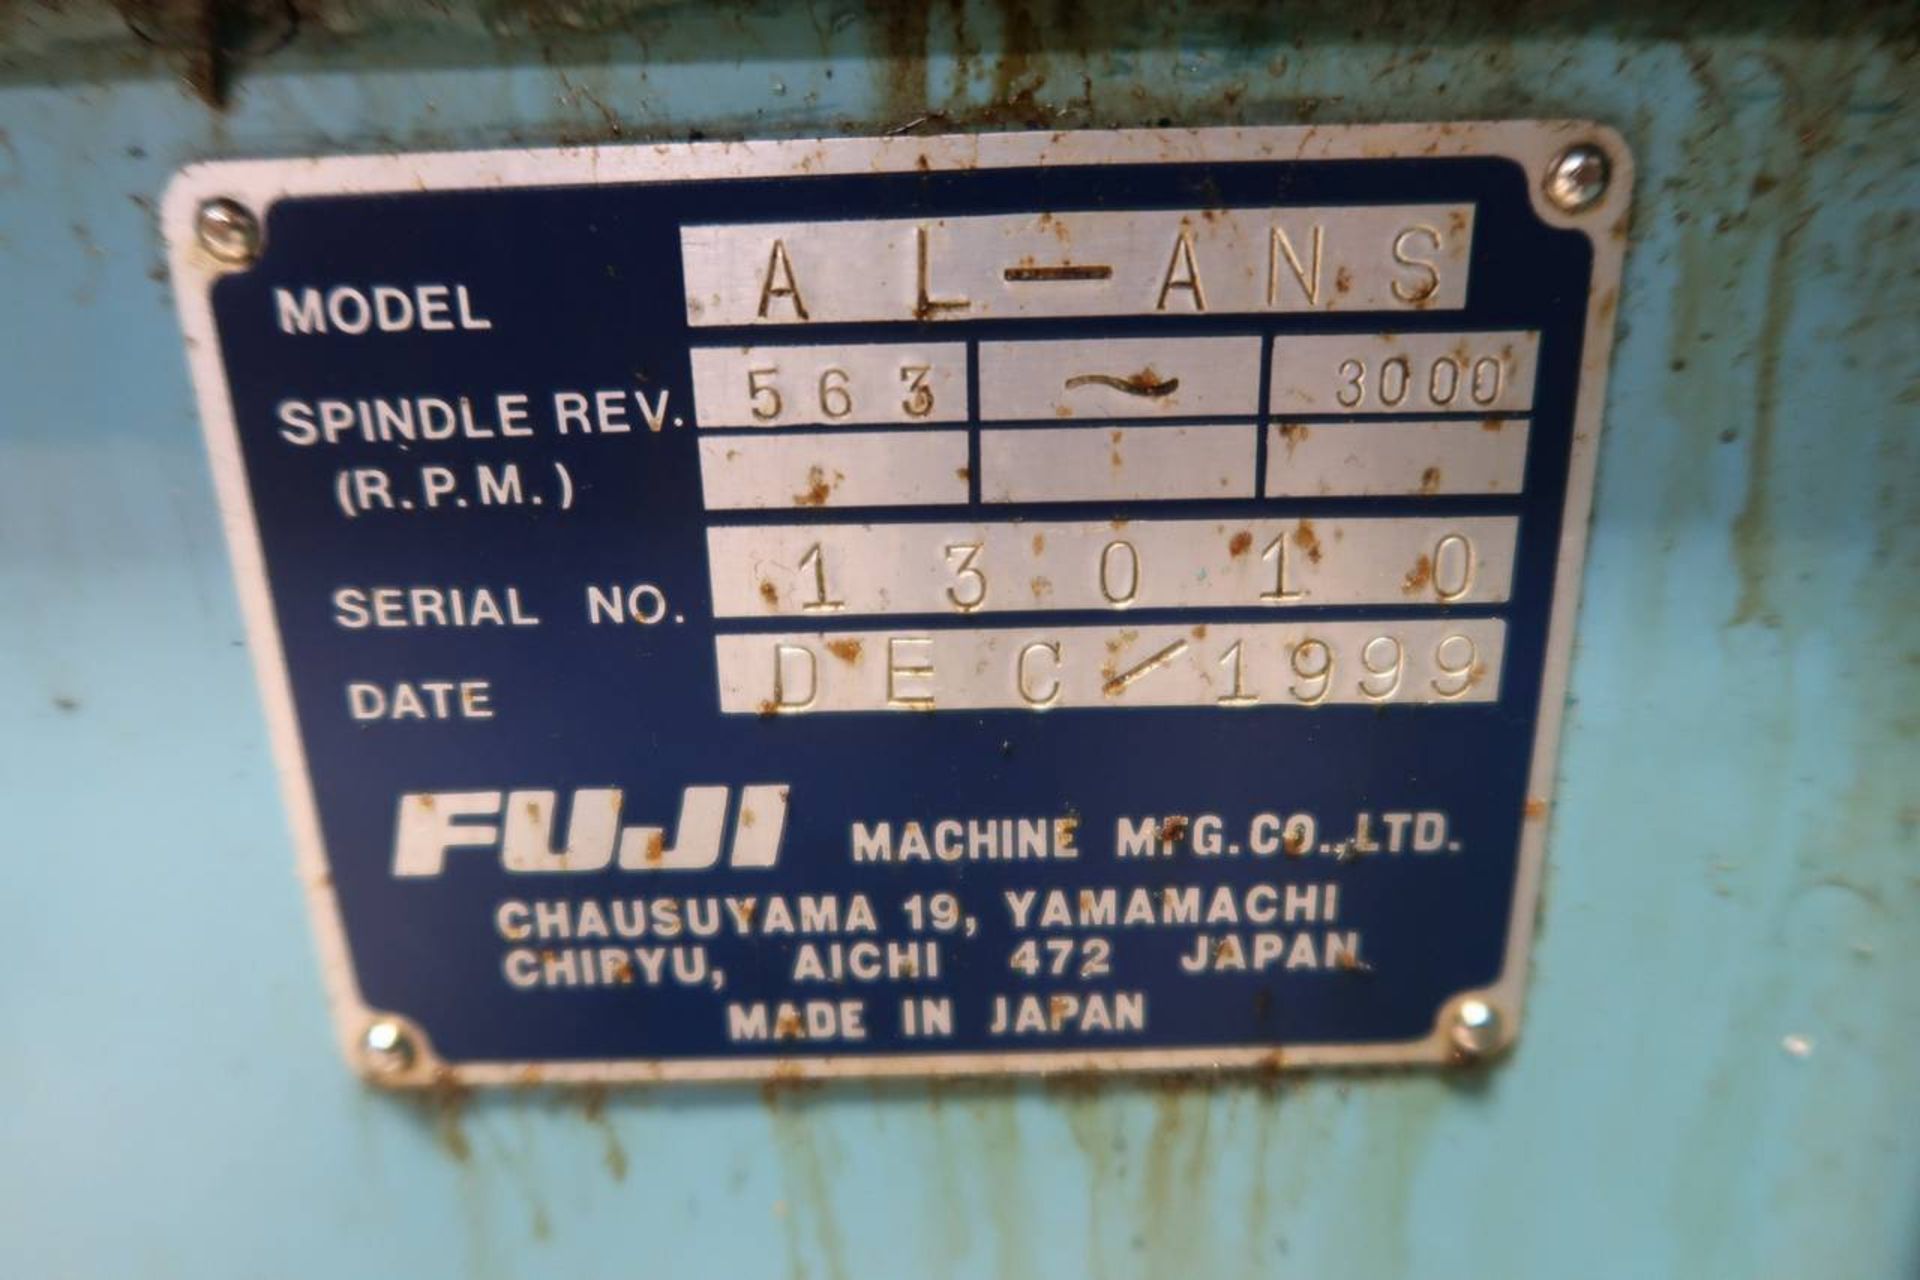 1999 Fuji ANW-41T CNC Lathe - Image 11 of 12